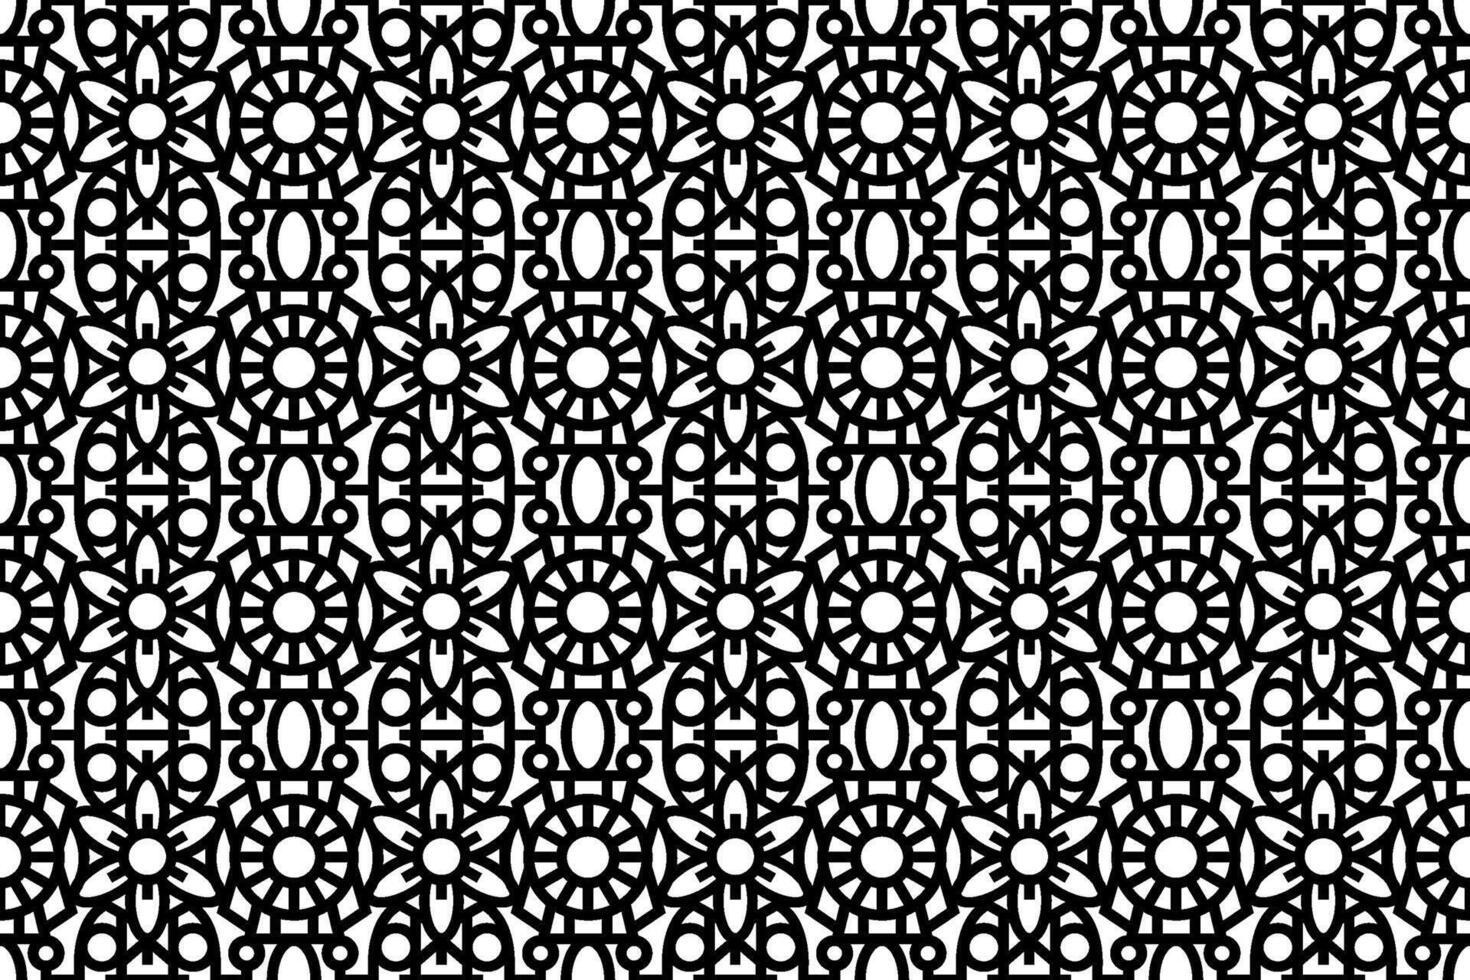 abstract naadloos zwart en wit bloemen patroon. veter, trimmen, lijn kunst patroon met bloemen elementen. vector